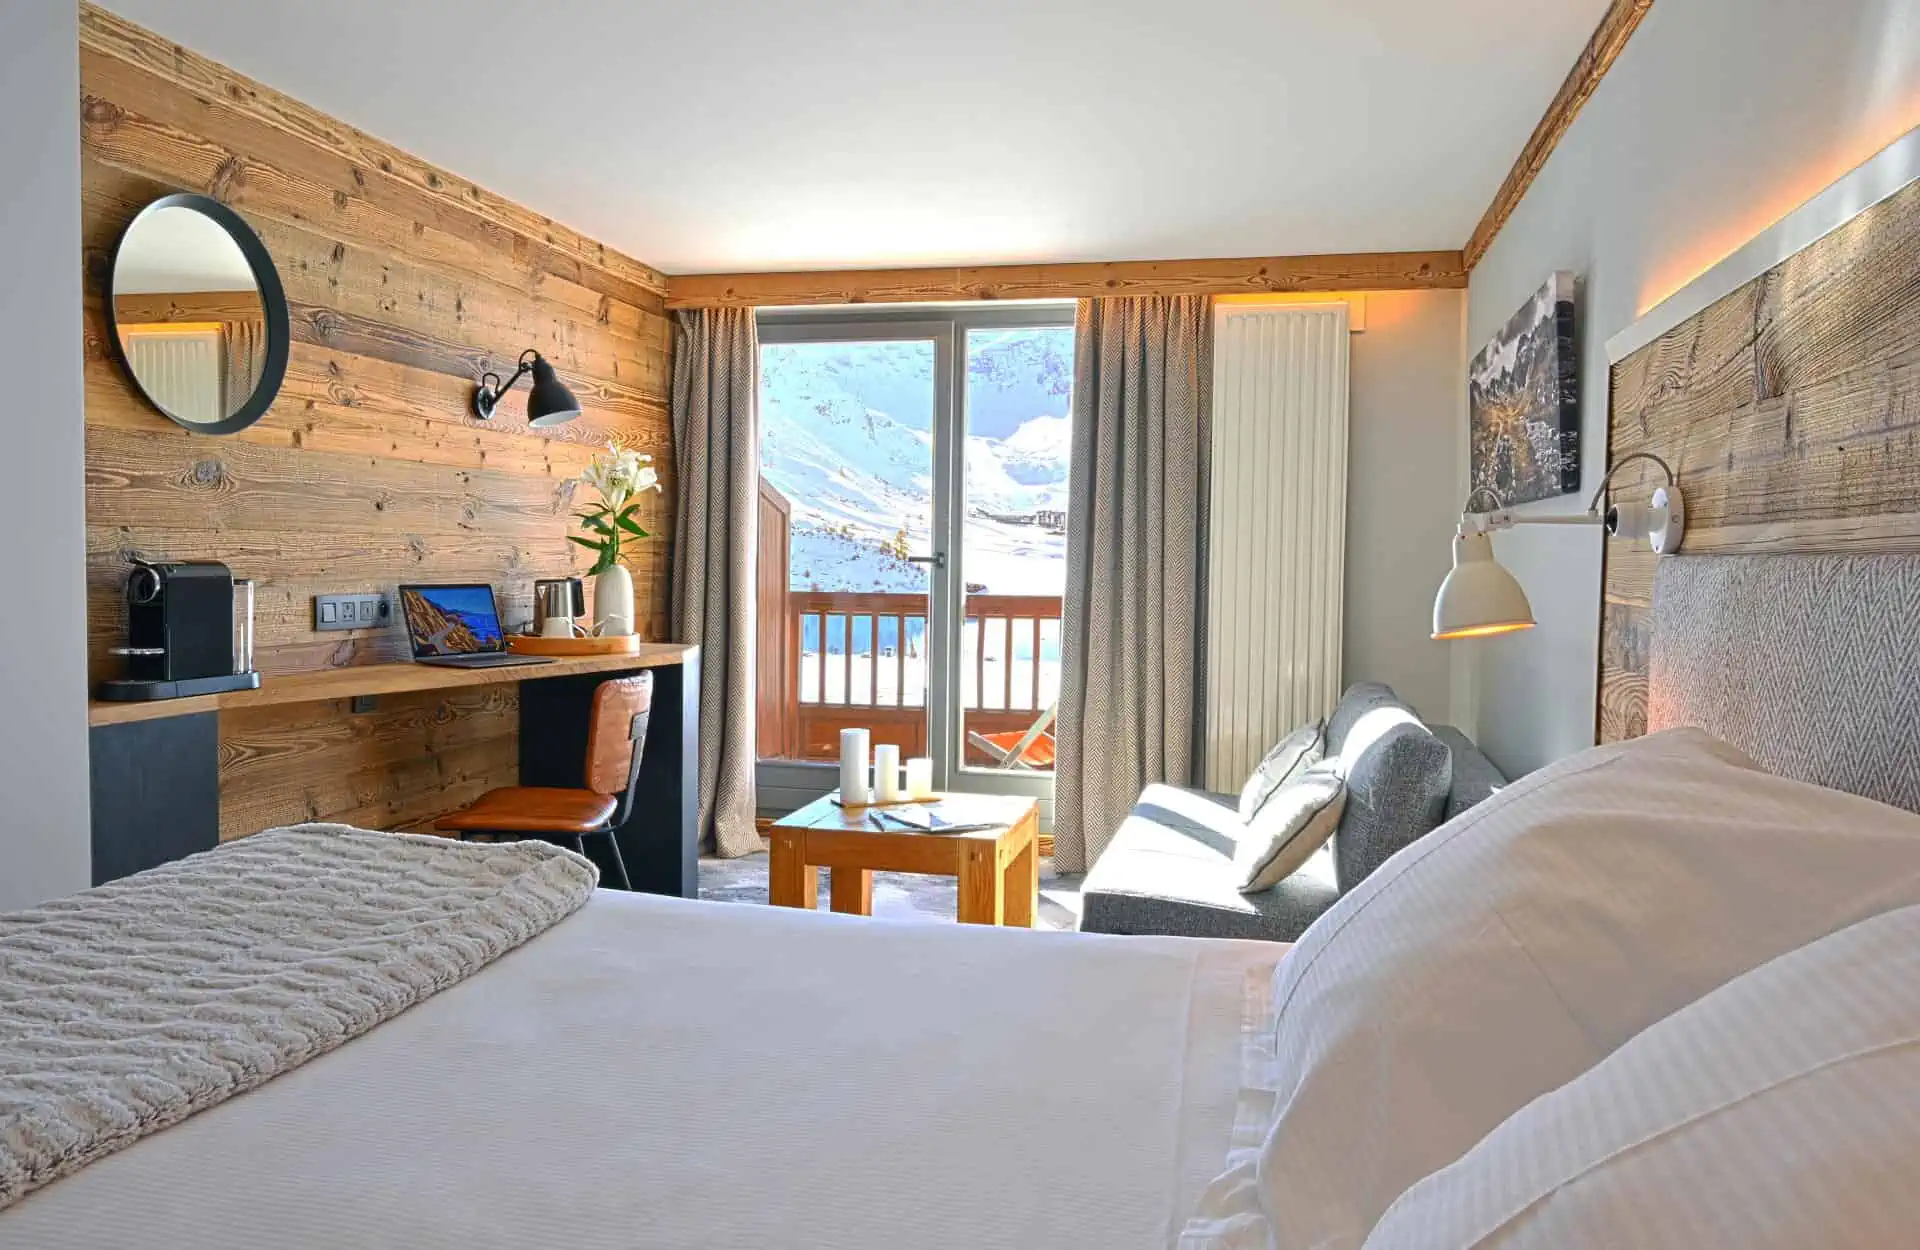 Levanna Hotel in tignes - Villages & mountain suites